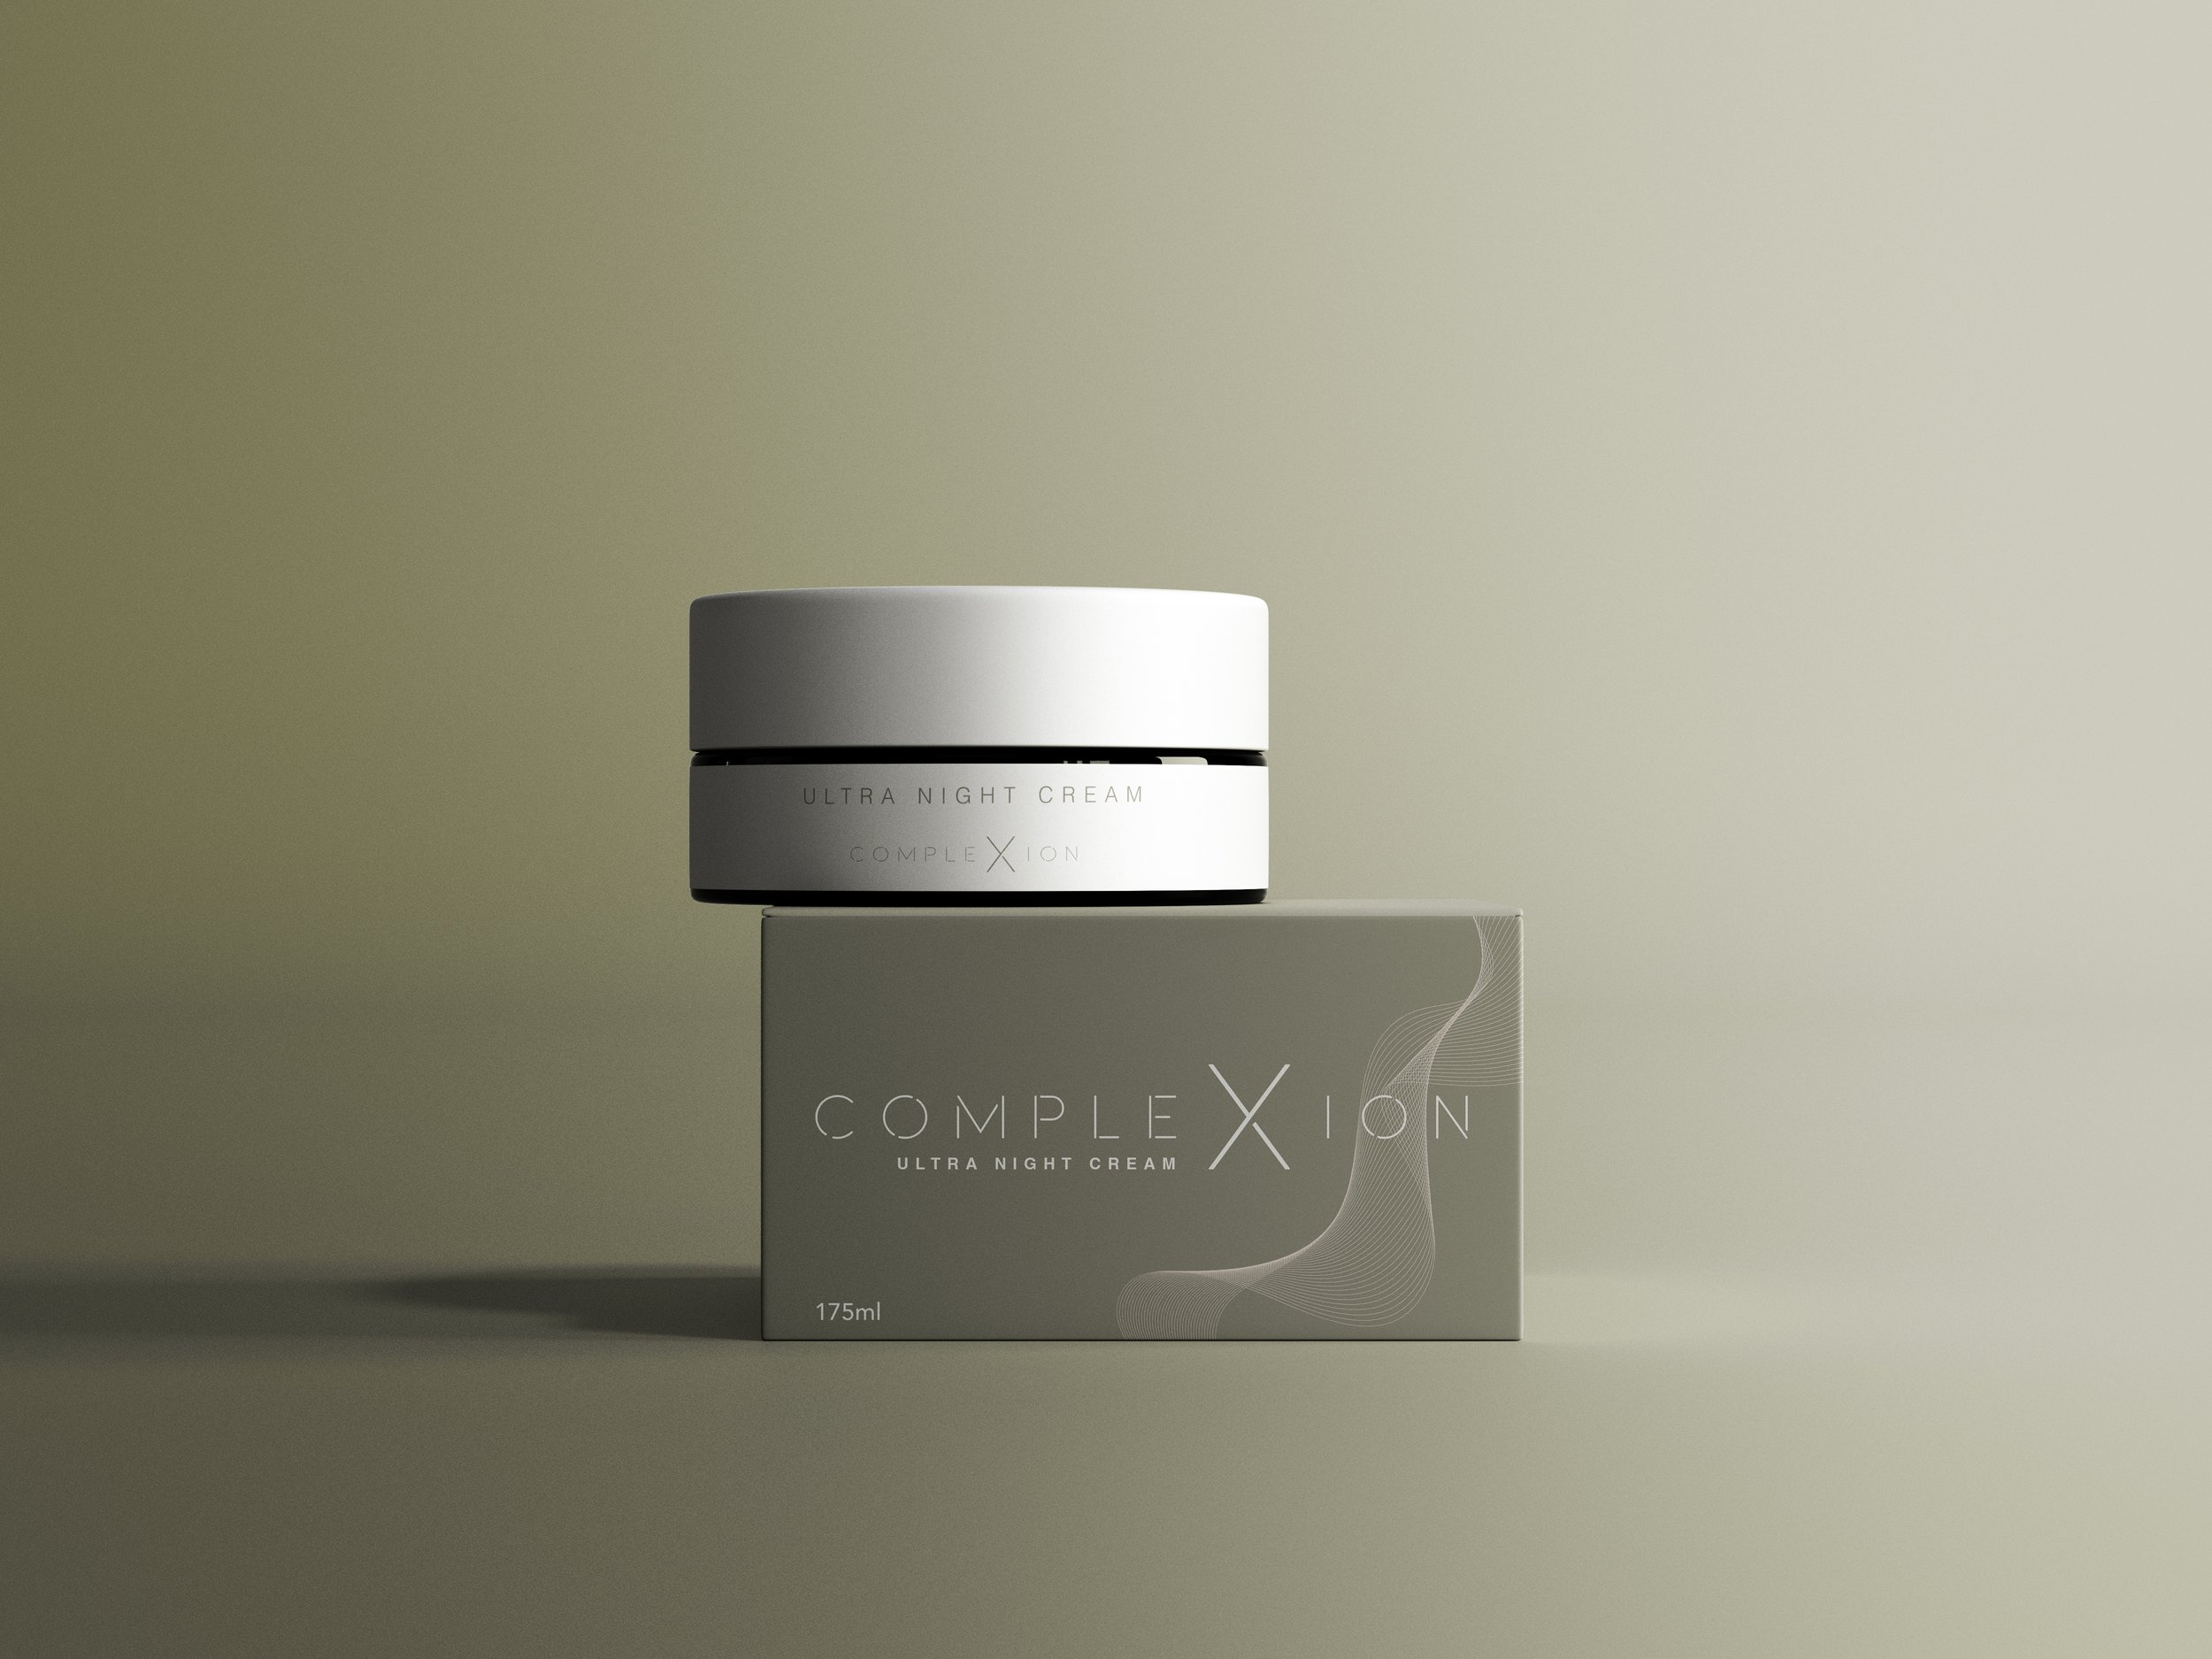 COMPLEX-ION Skincare